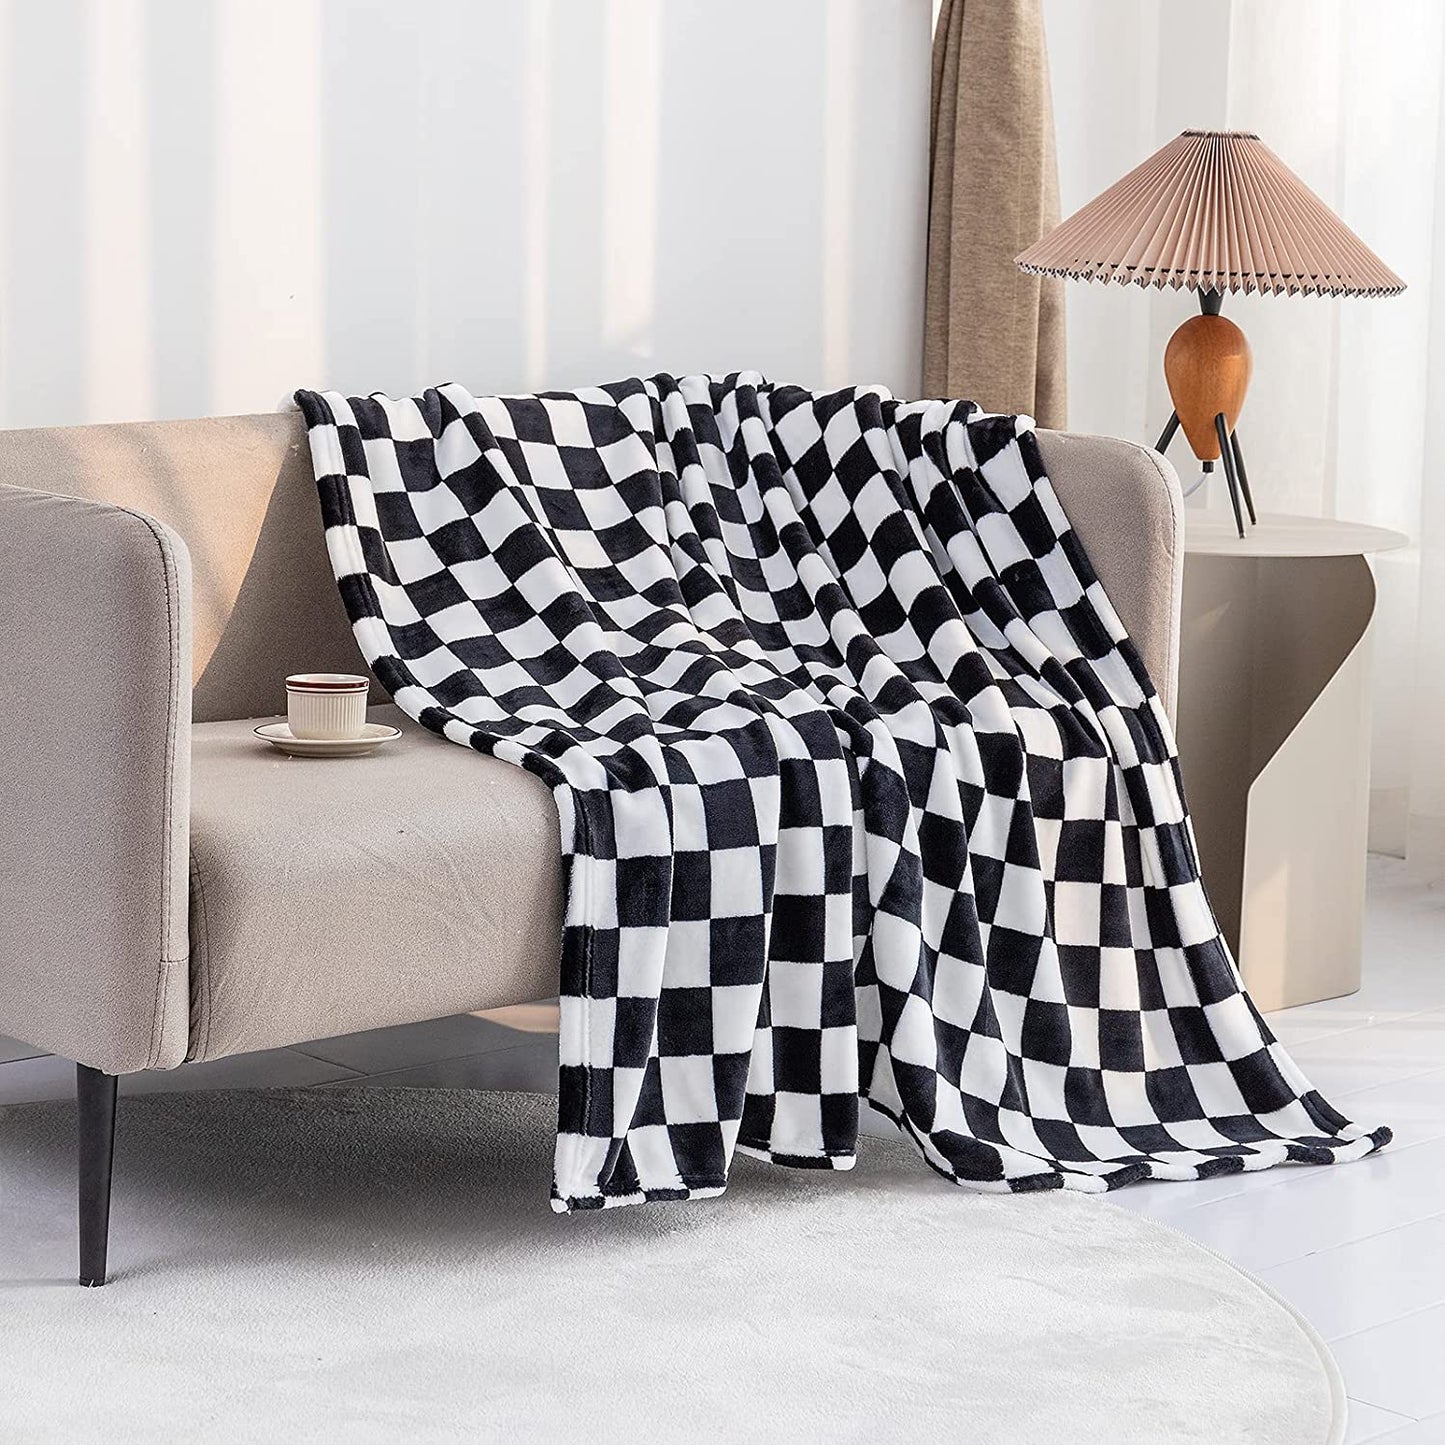 Black & White Checkered Throw Blanket